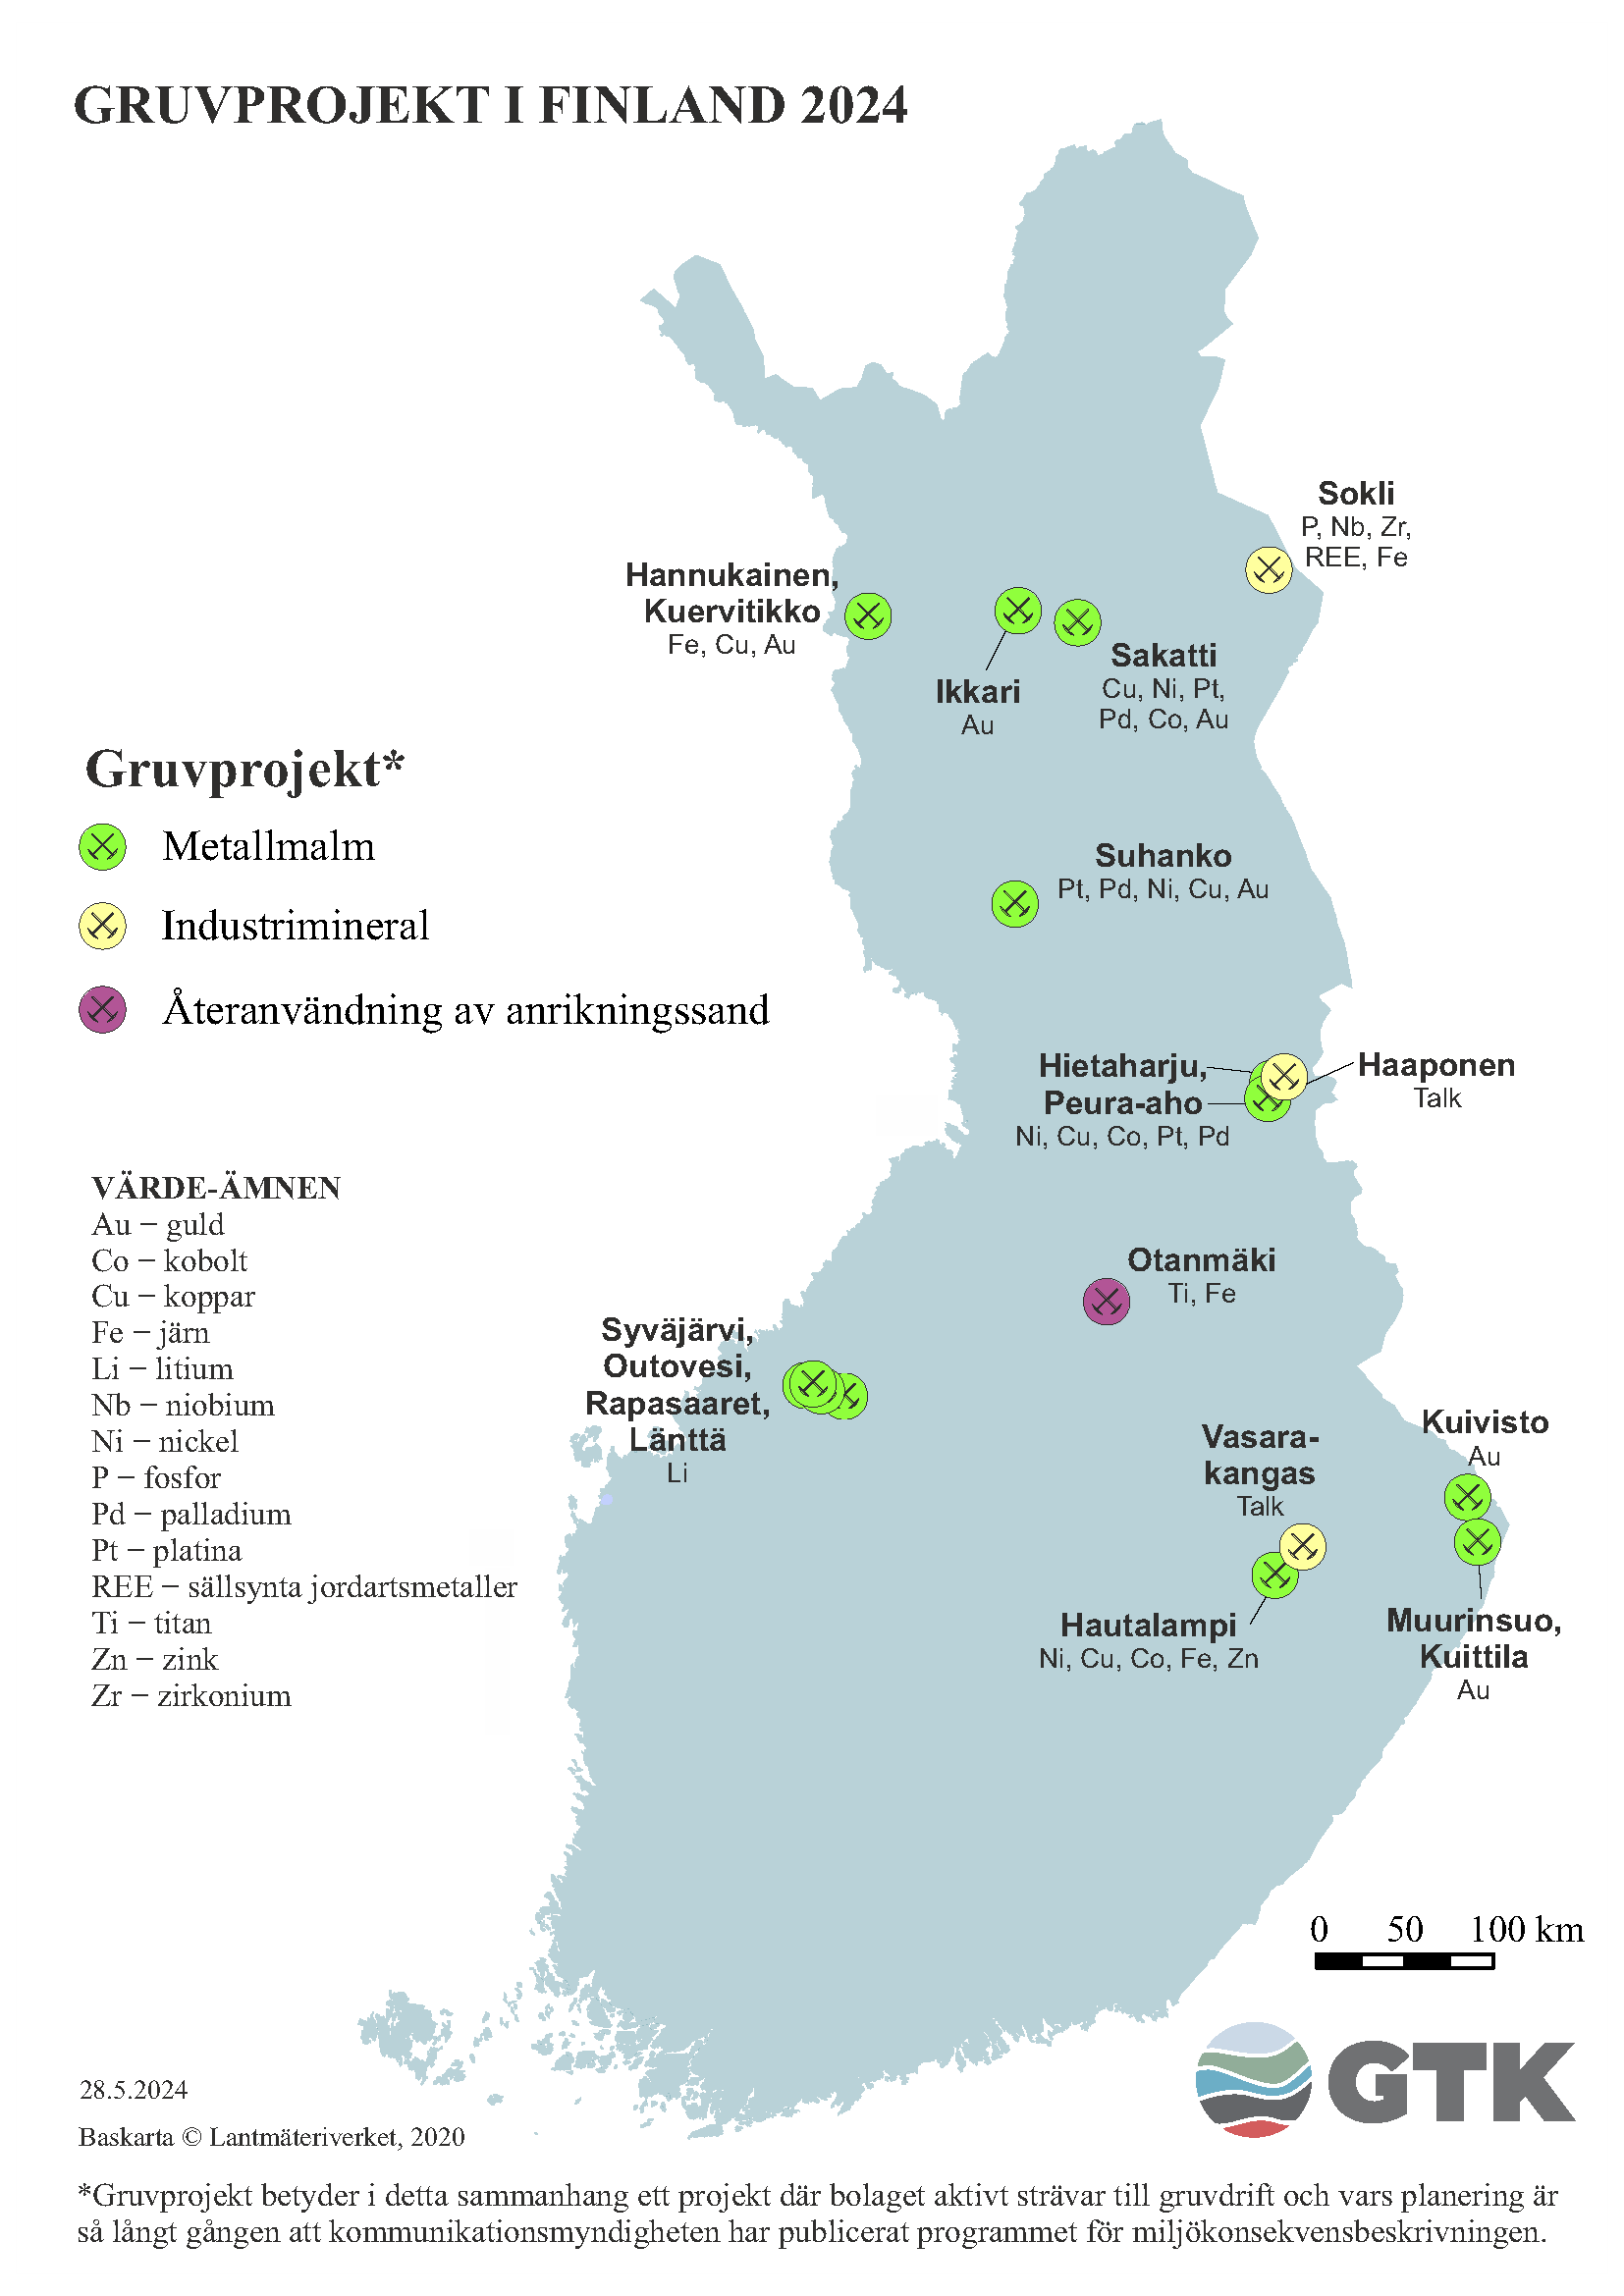 Gruvprojekt på kartan över Finland